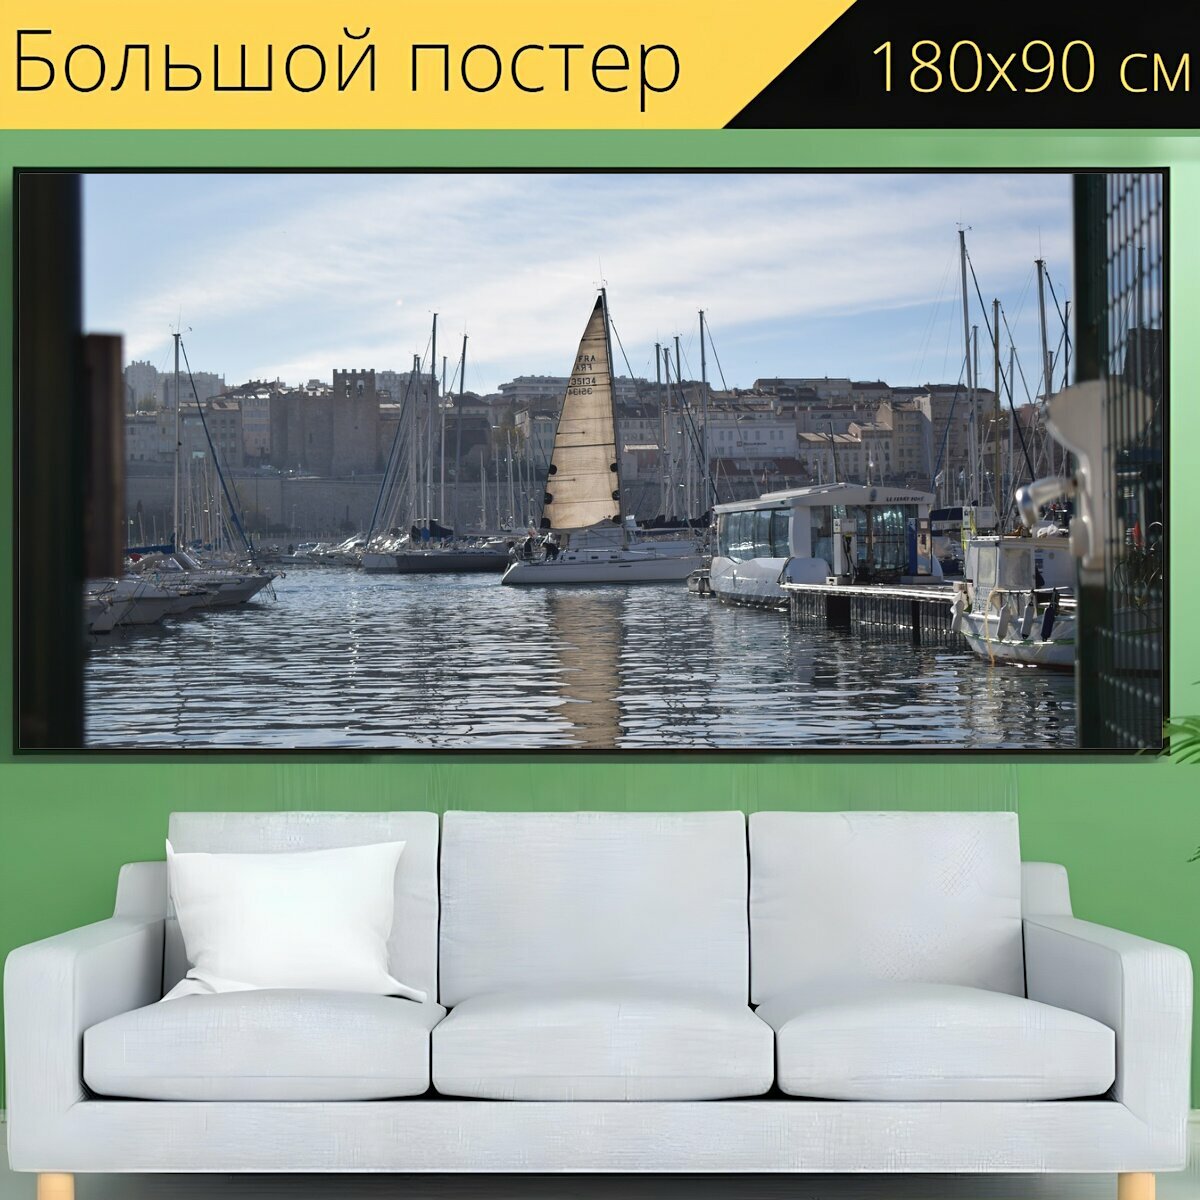 Большой постер "Лодка, судно, море" 180 x 90 см. для интерьера